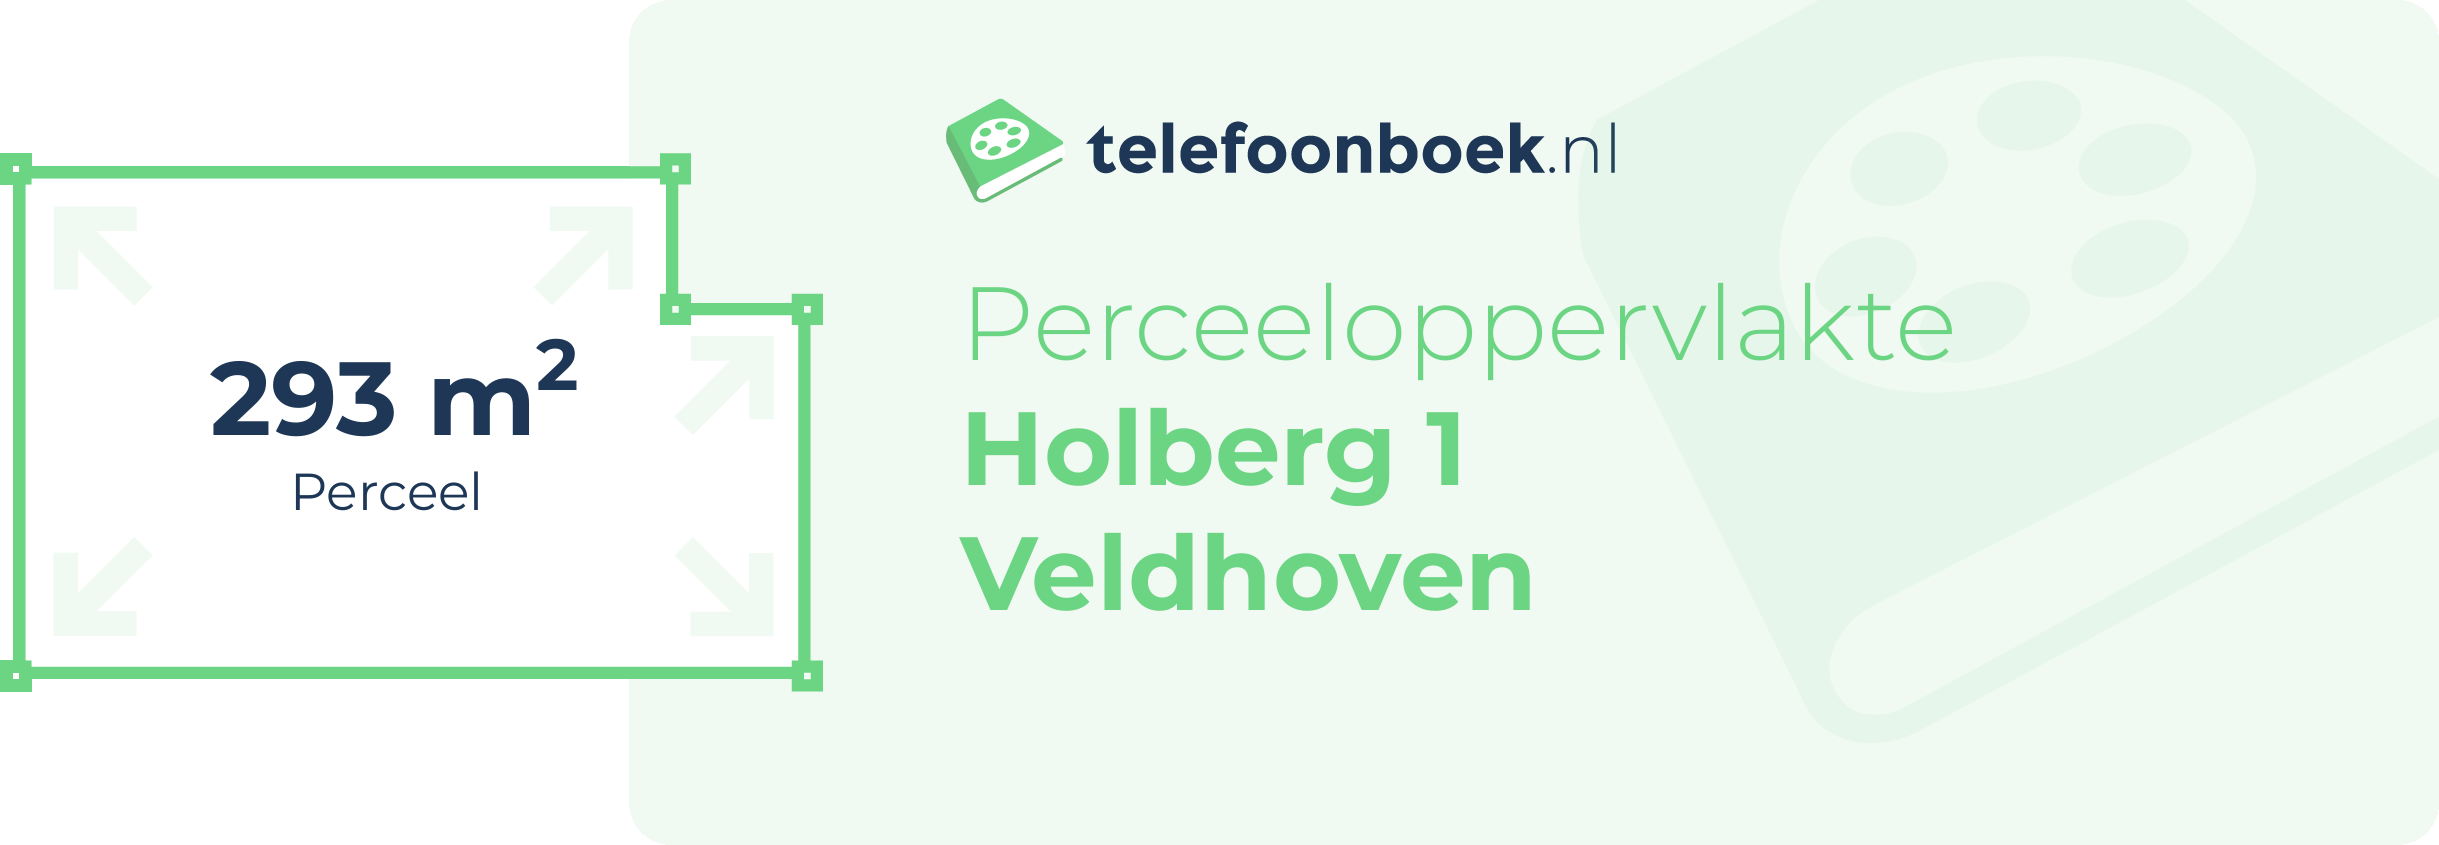 Perceeloppervlakte Holberg 1 Veldhoven